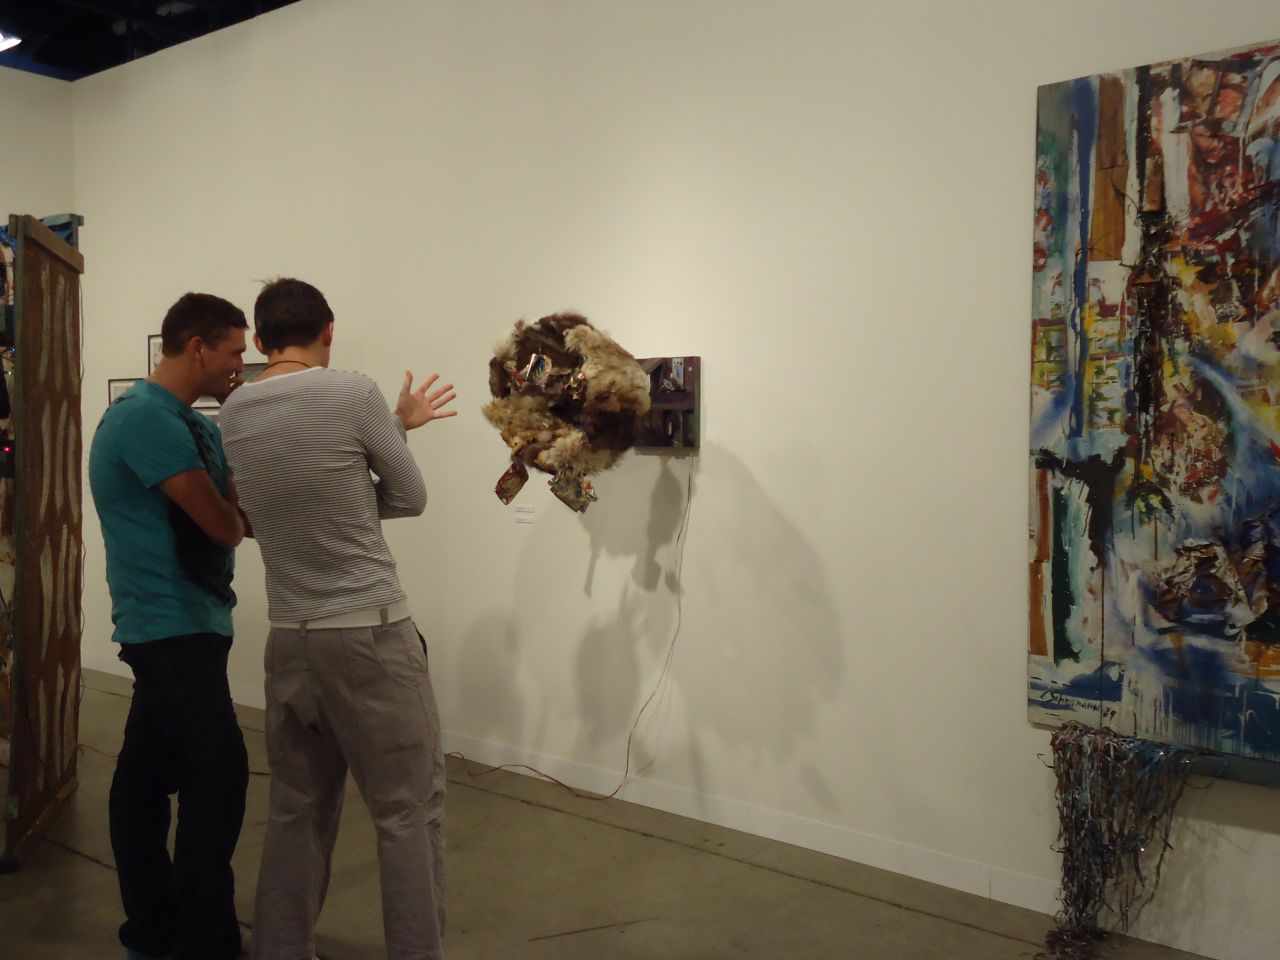 Un total de 258 galerías internacionales provenientes de 31 países de cuatro continentes conforman el Art Basel 2013. Estas son algunas de las obras exhibidas en el Centro de Convenciones de Miami Beach